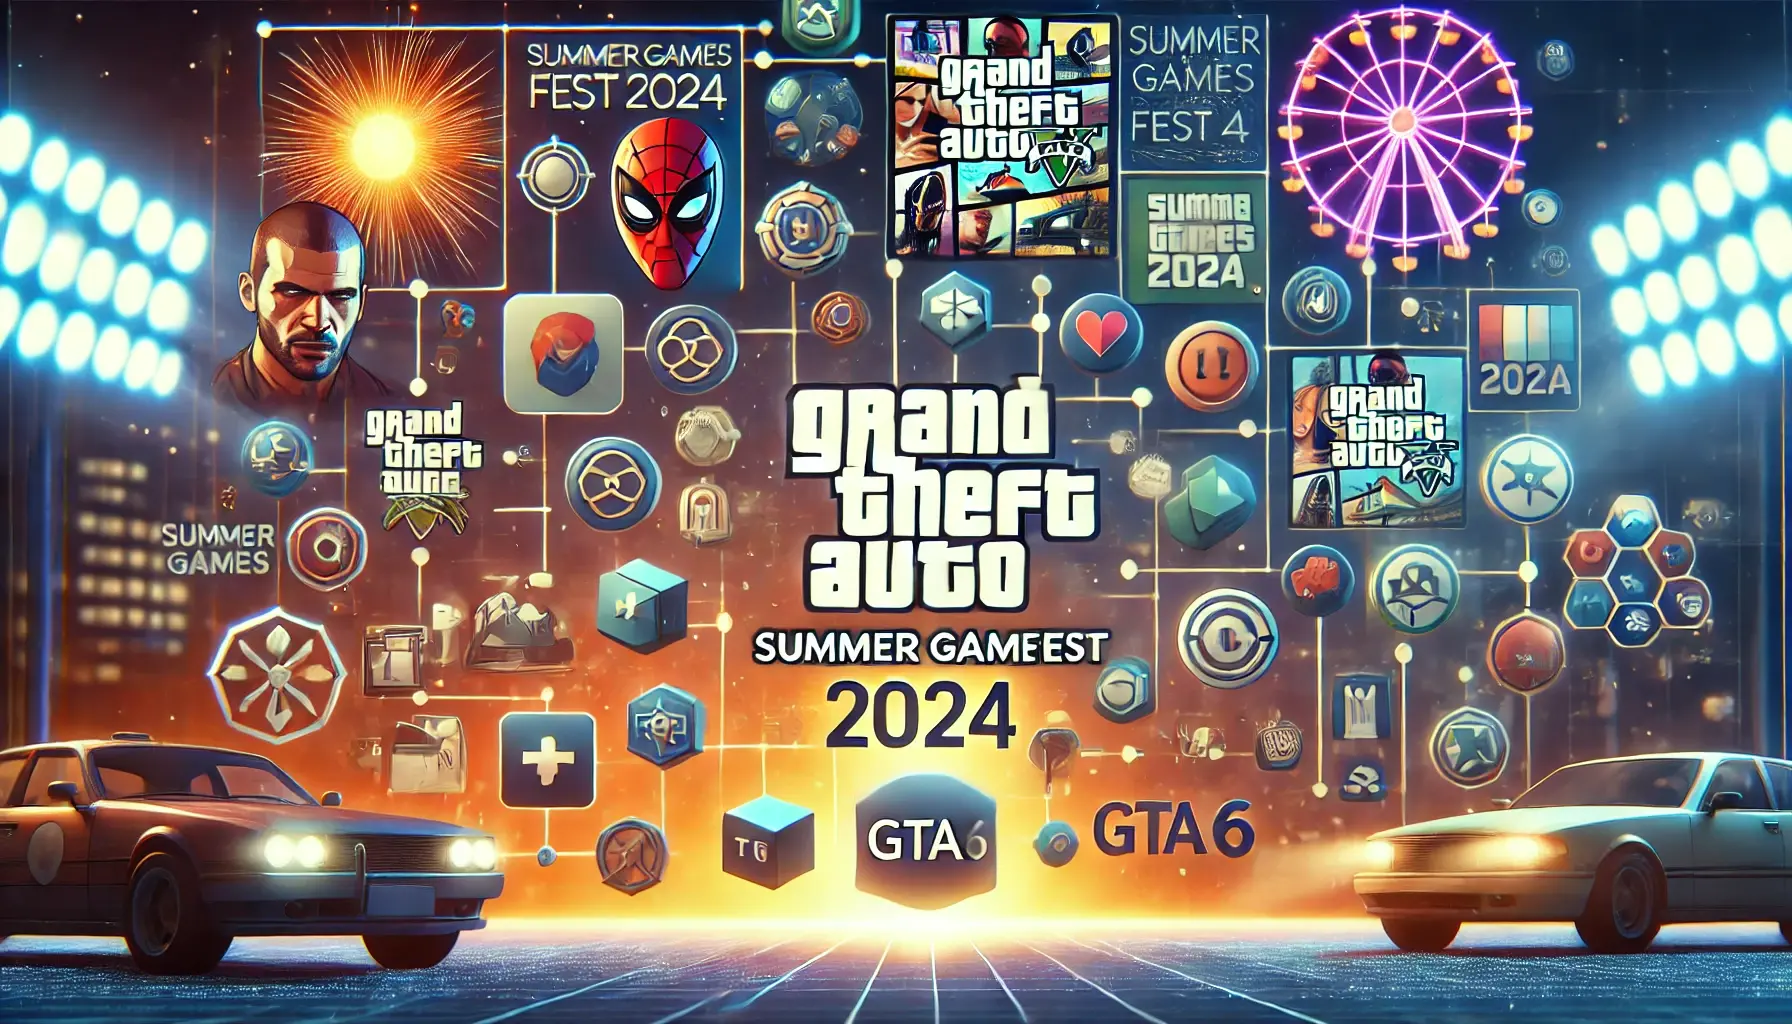 Introdução
GTA 6 tem sido um dos jogos mais aguardados pelos fãs da franquia Grand Theft Auto, e os rumores sobre seu lançamento vêm circulando há anos. No entanto, uma notícia recente pegou muitos fãs de surpresa: o novo jogo da série não estará presente no Summer Games Fest 2024. Isso gerou muitas especulações e debates entre os jogadores de todo o mundo.